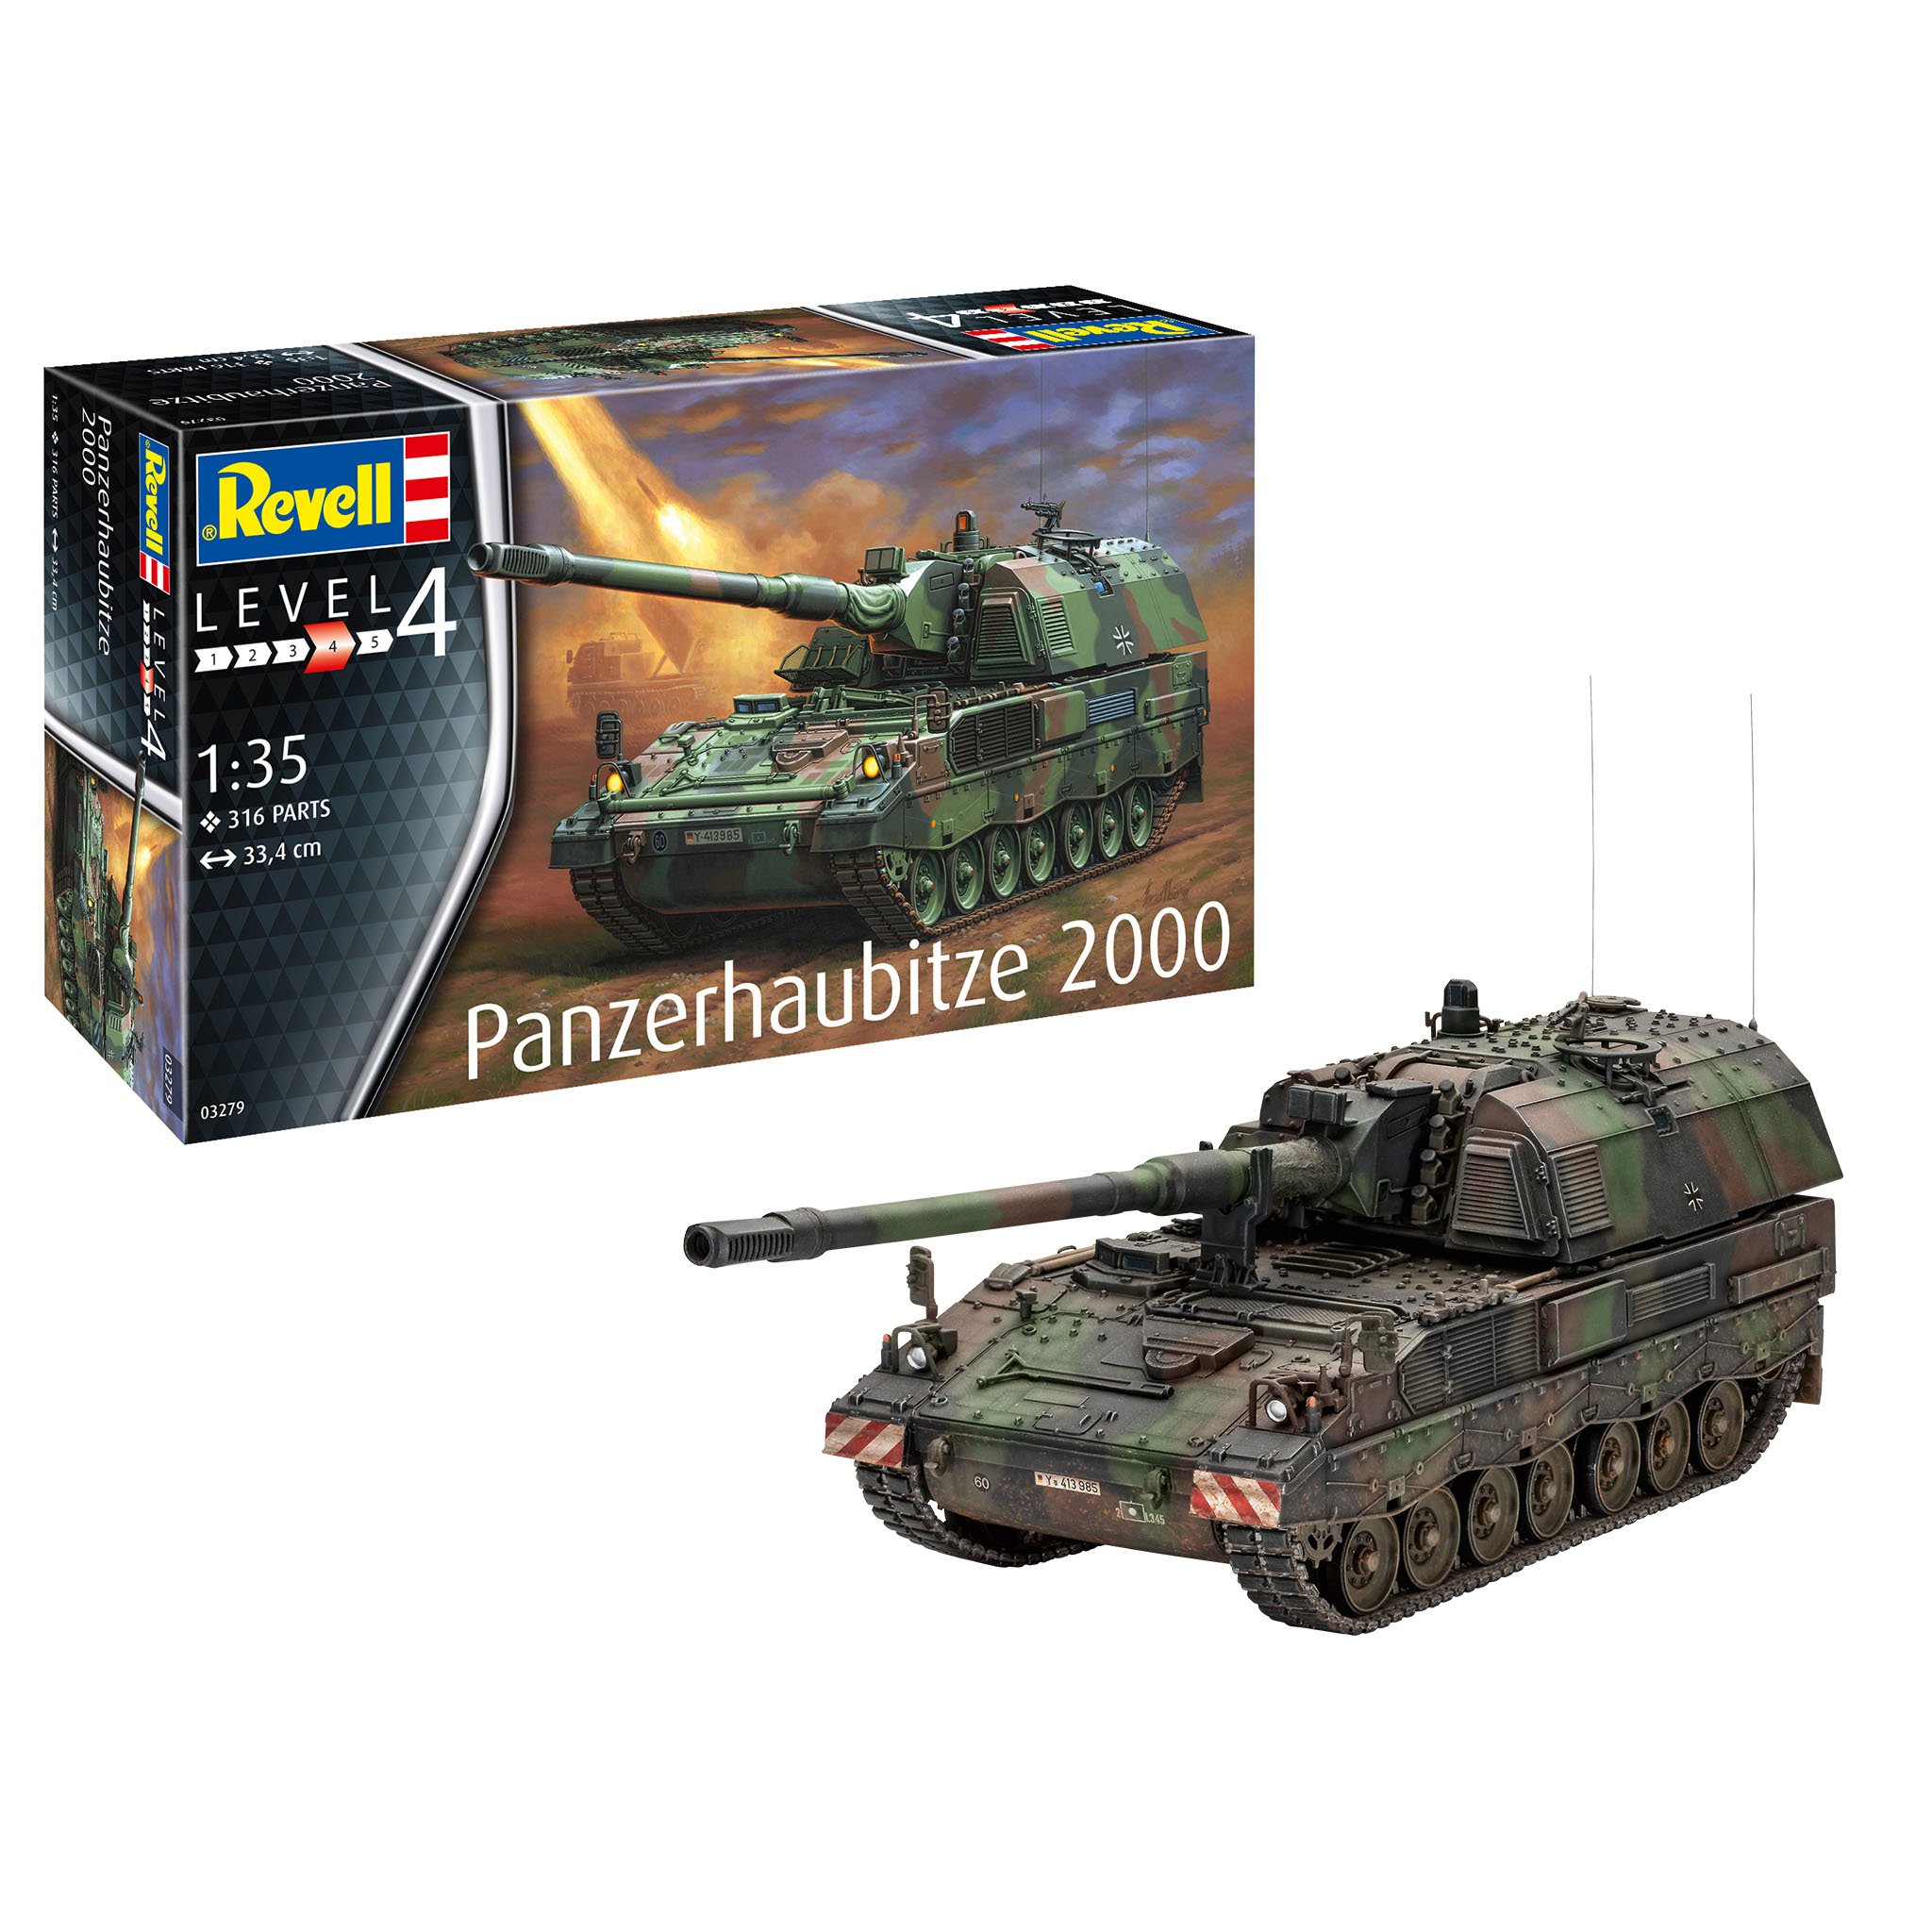 RV03279 - Revell Kit 1:35 - Panzerhaubitze 2000